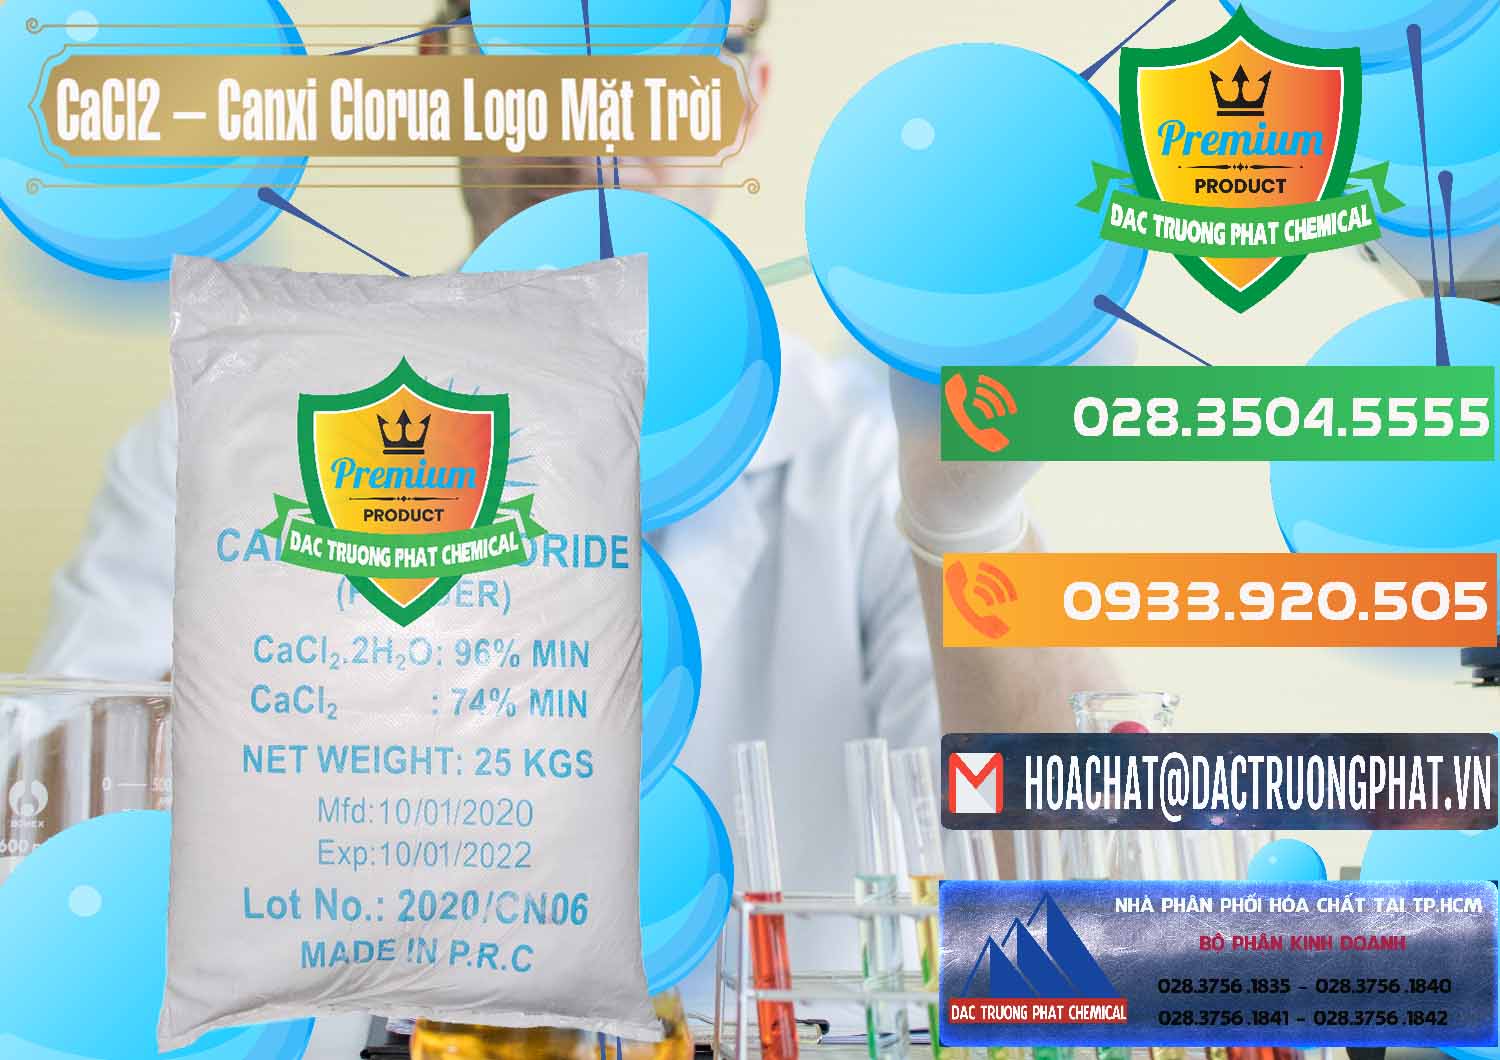 Cty chuyên kinh doanh & bán CaCl2 – Canxi Clorua 96% Logo Mặt Trời Trung Quốc China - 0041 - Nhà phân phối và kinh doanh hóa chất tại TP.HCM - hoachatxulynuoc.com.vn